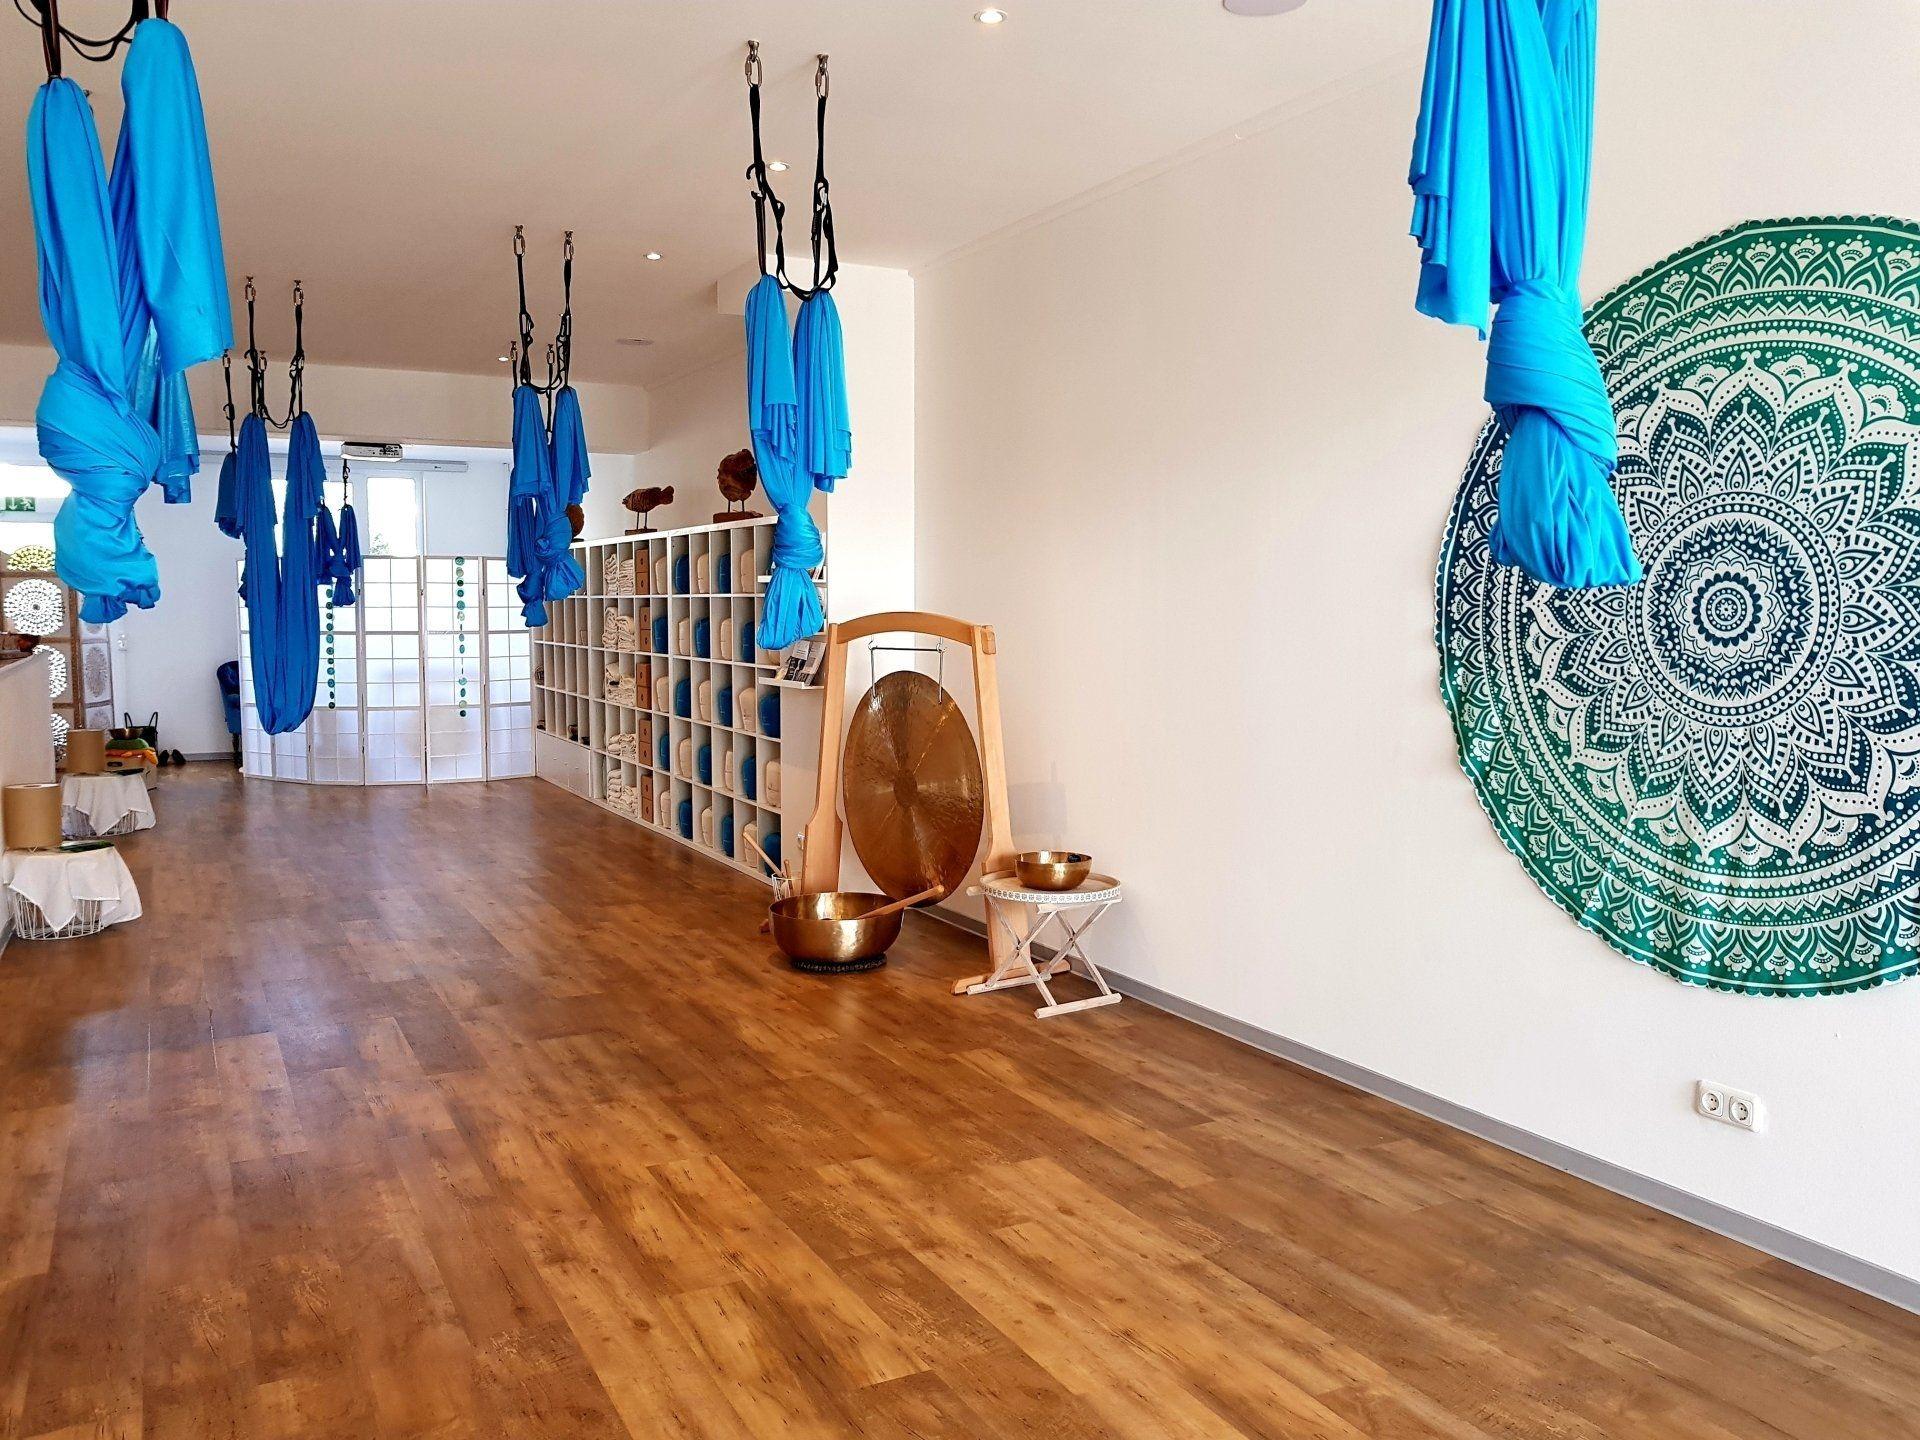 In einem Raum hängen blaue Aerial-Yoga-Tücher von der Decke